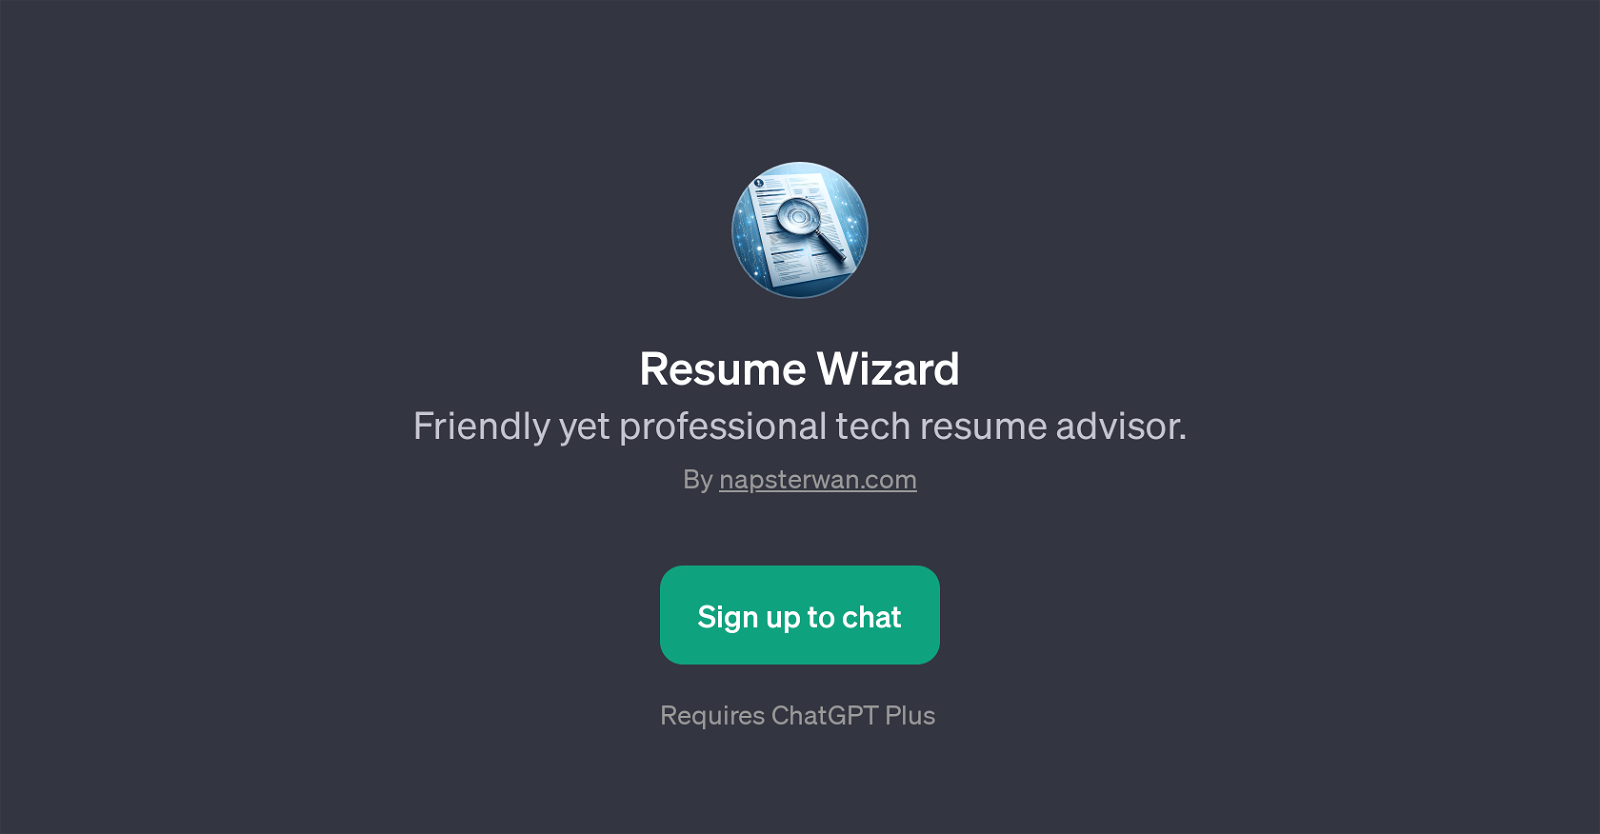 Resume Wizard website